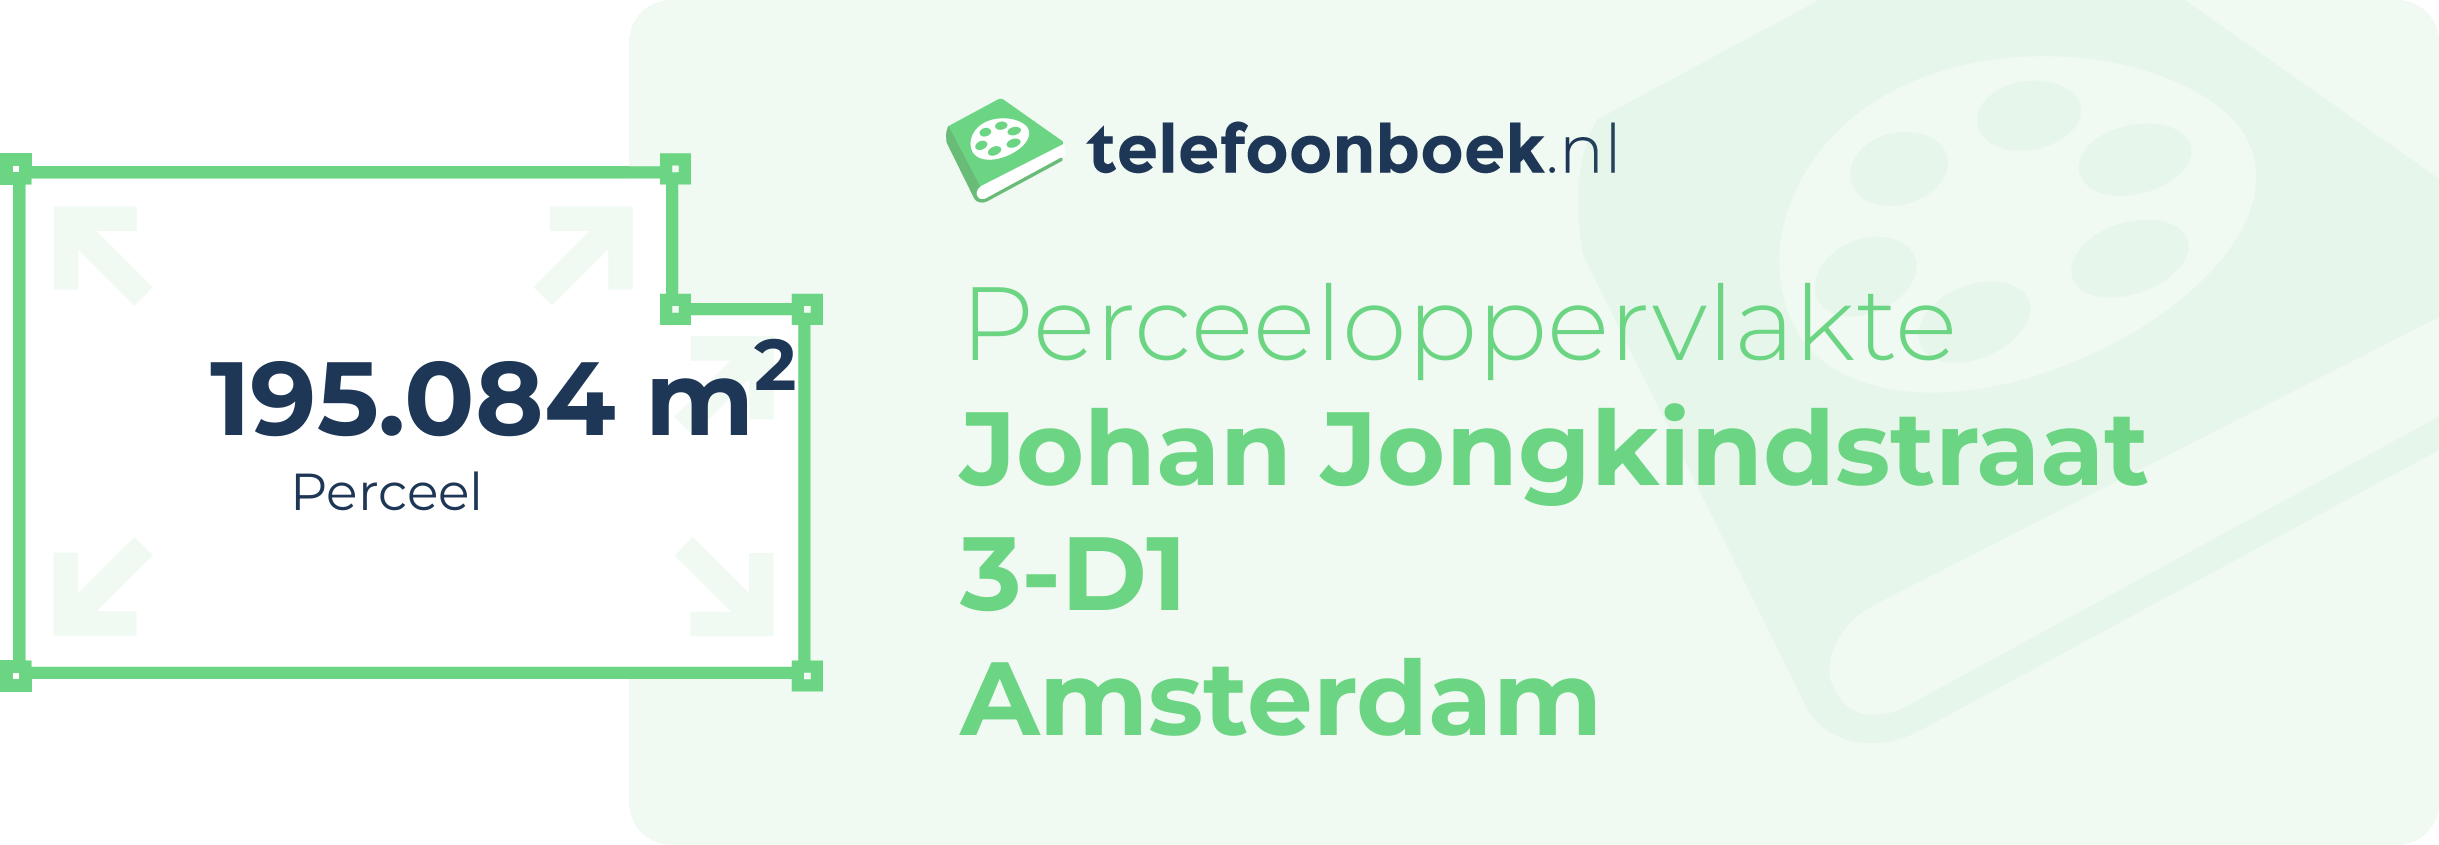 Perceeloppervlakte Johan Jongkindstraat 3-D1 Amsterdam